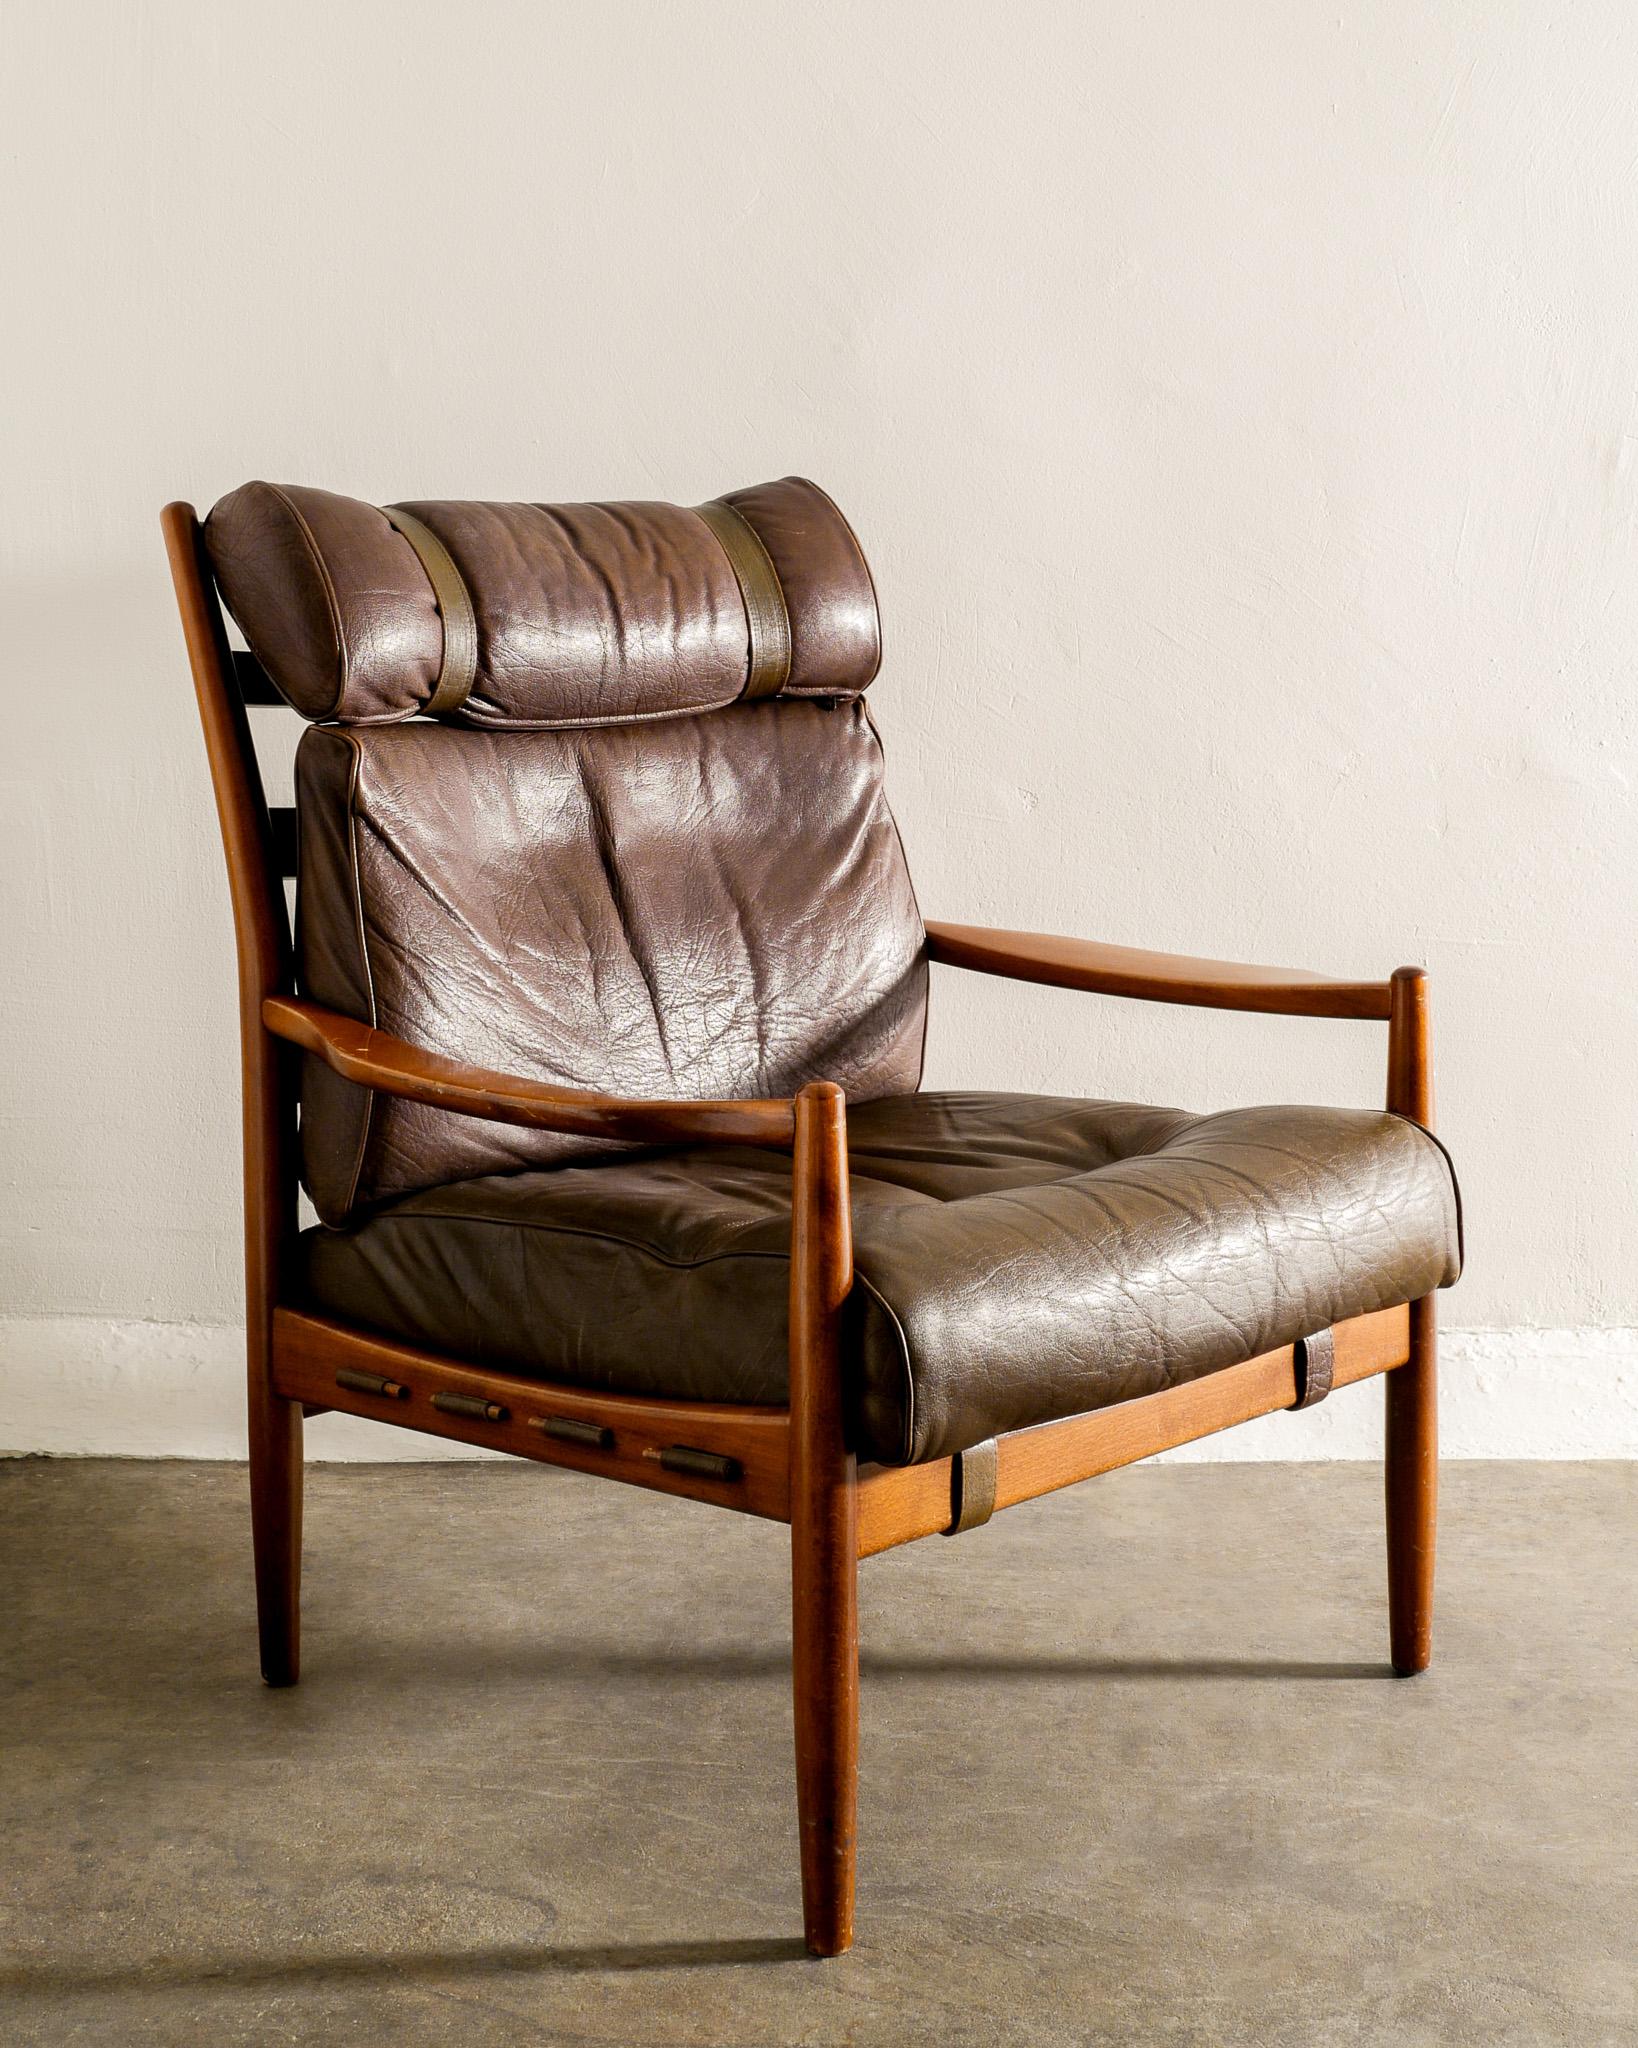 Rare fauteuil du milieu du siècle en cuir de buffle épais, patiné, bien conservé et en noyer dans le style d'Arne Norells produit en Suède dans les années 1950. Bon état d'origine. 

Dimensions : H : 90 cm / 35.5